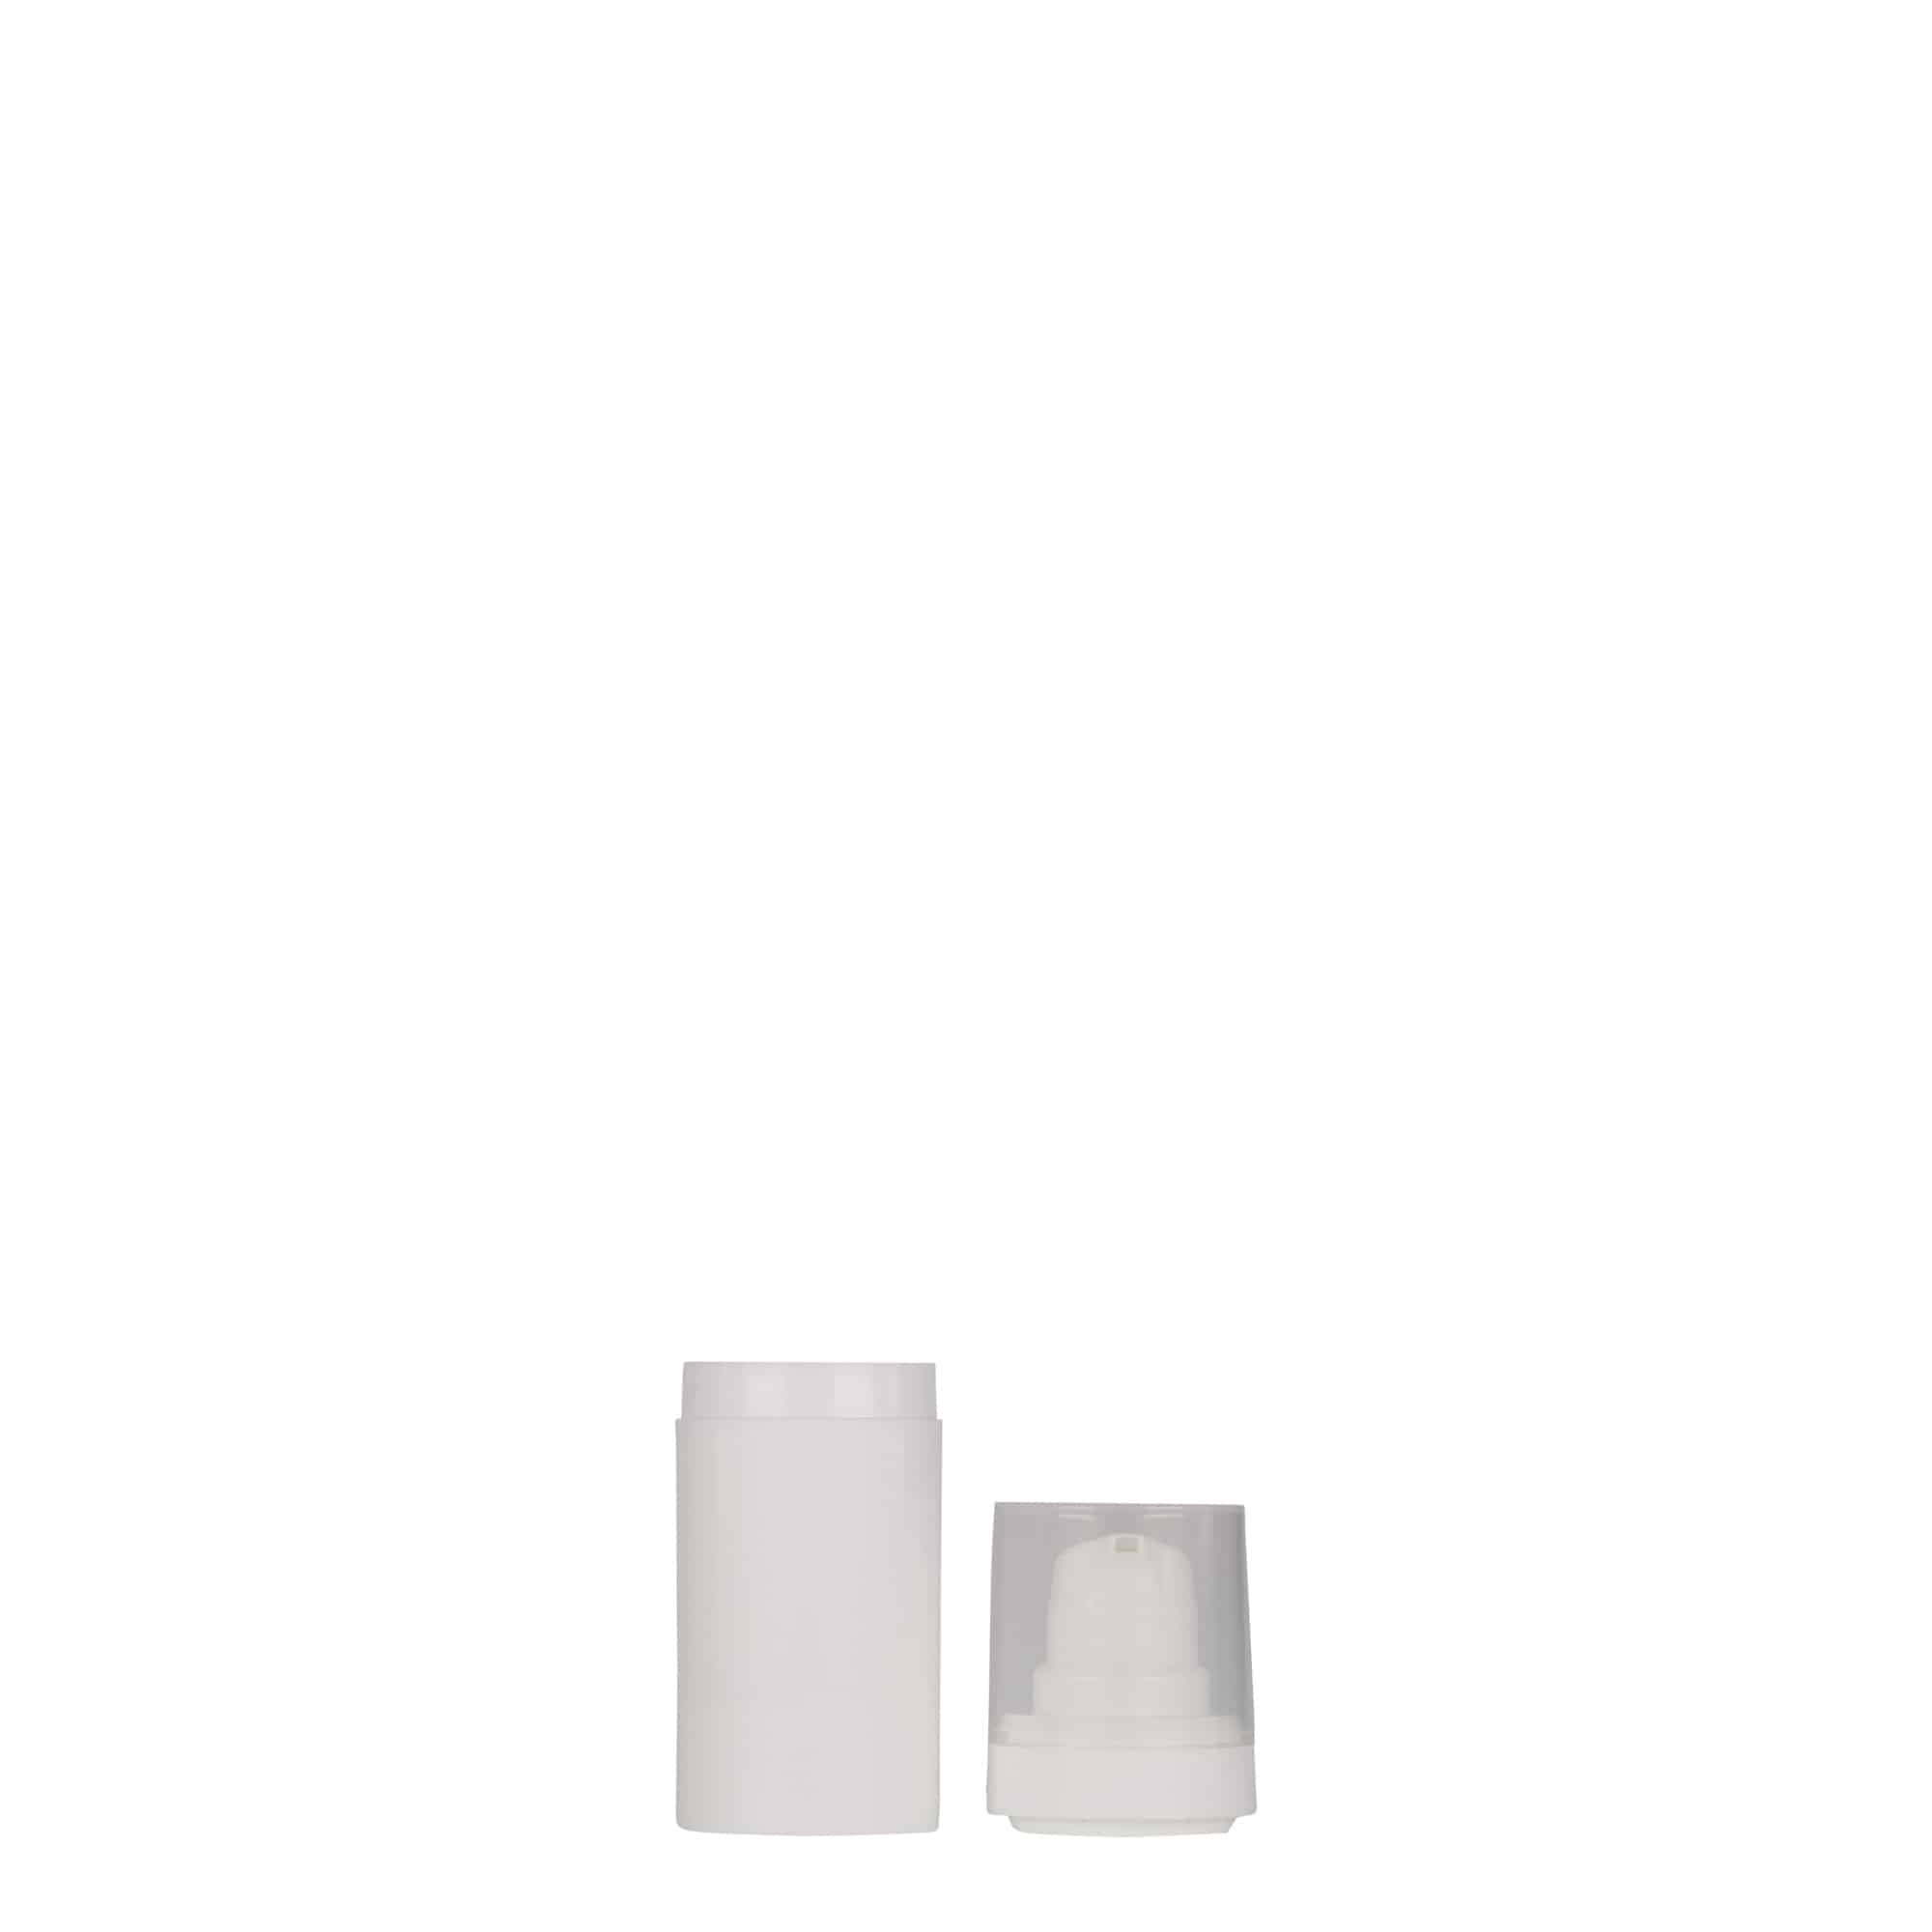 Bezvzduchový dávkovač 15 ml 'Micro', plast PP, bílý